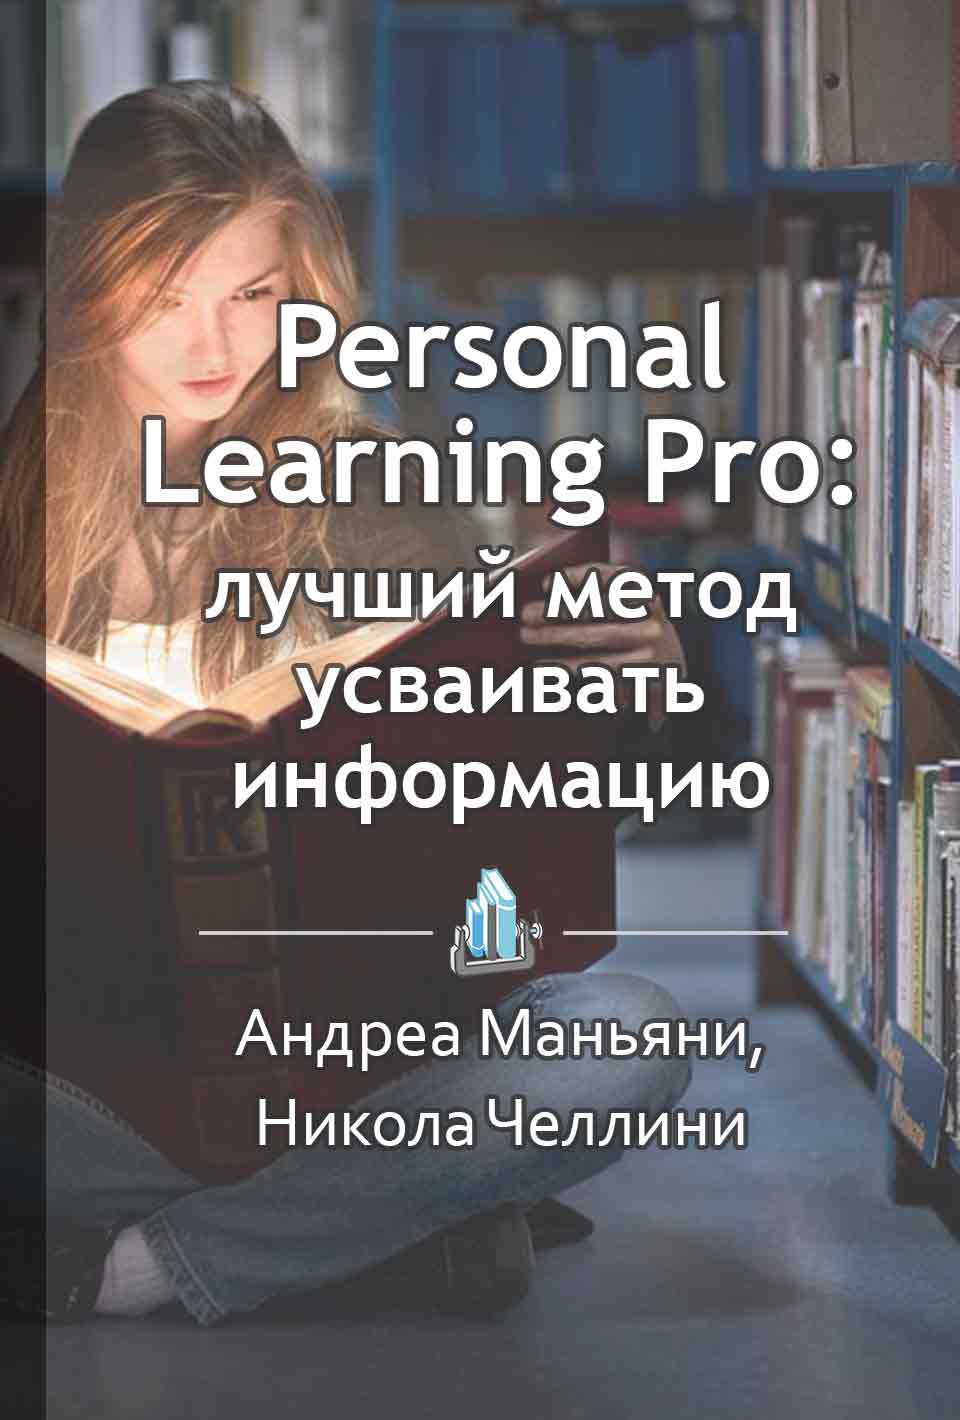 Personal Learning Pro: лучший метод усваивать информацию